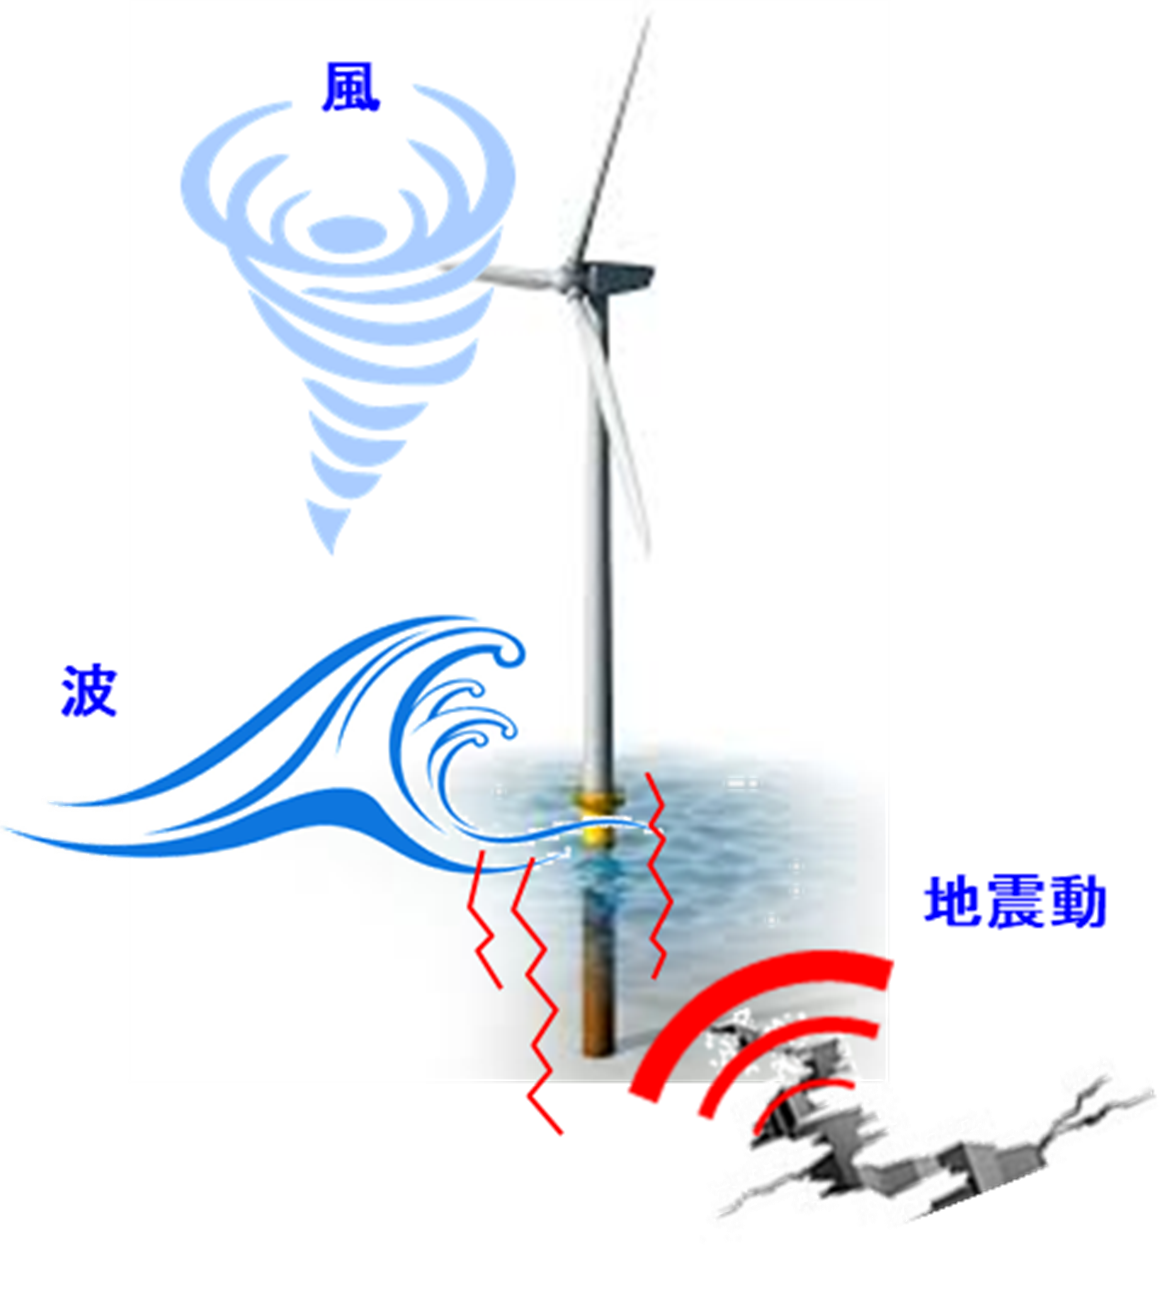 洋上風車に対する風・波・地震の同時発生のイメージ